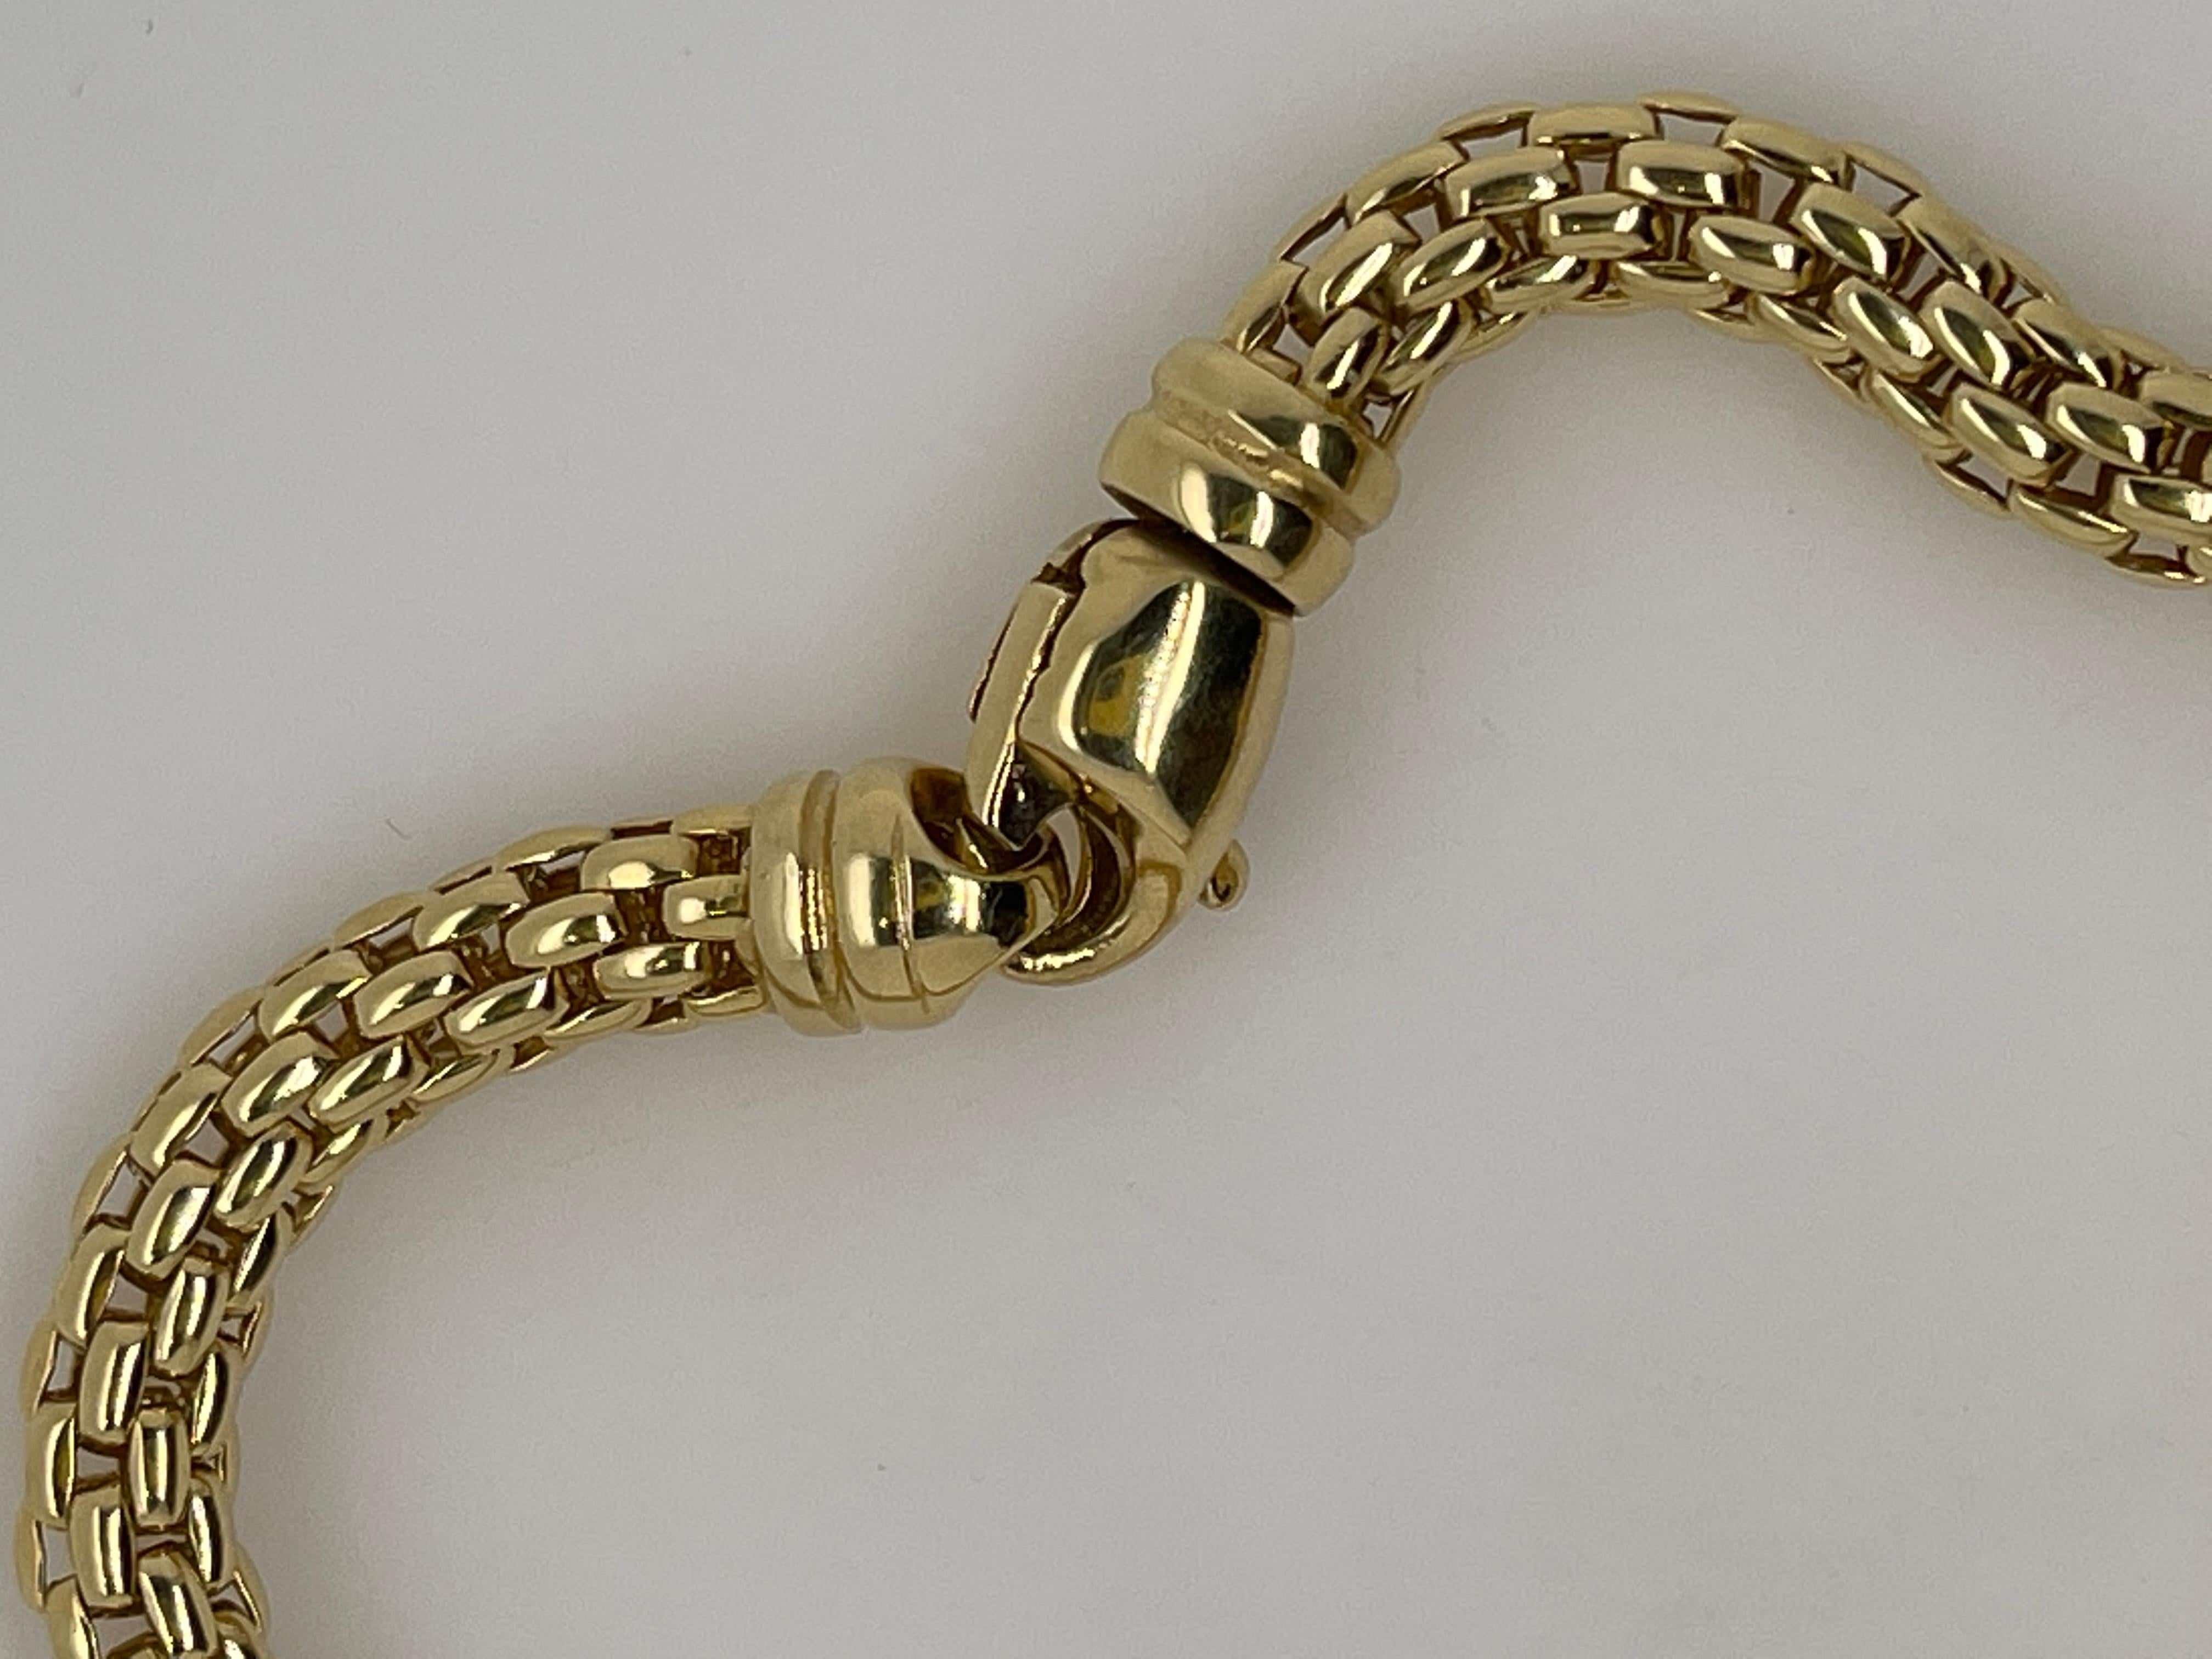 fancy italian gold chain designs